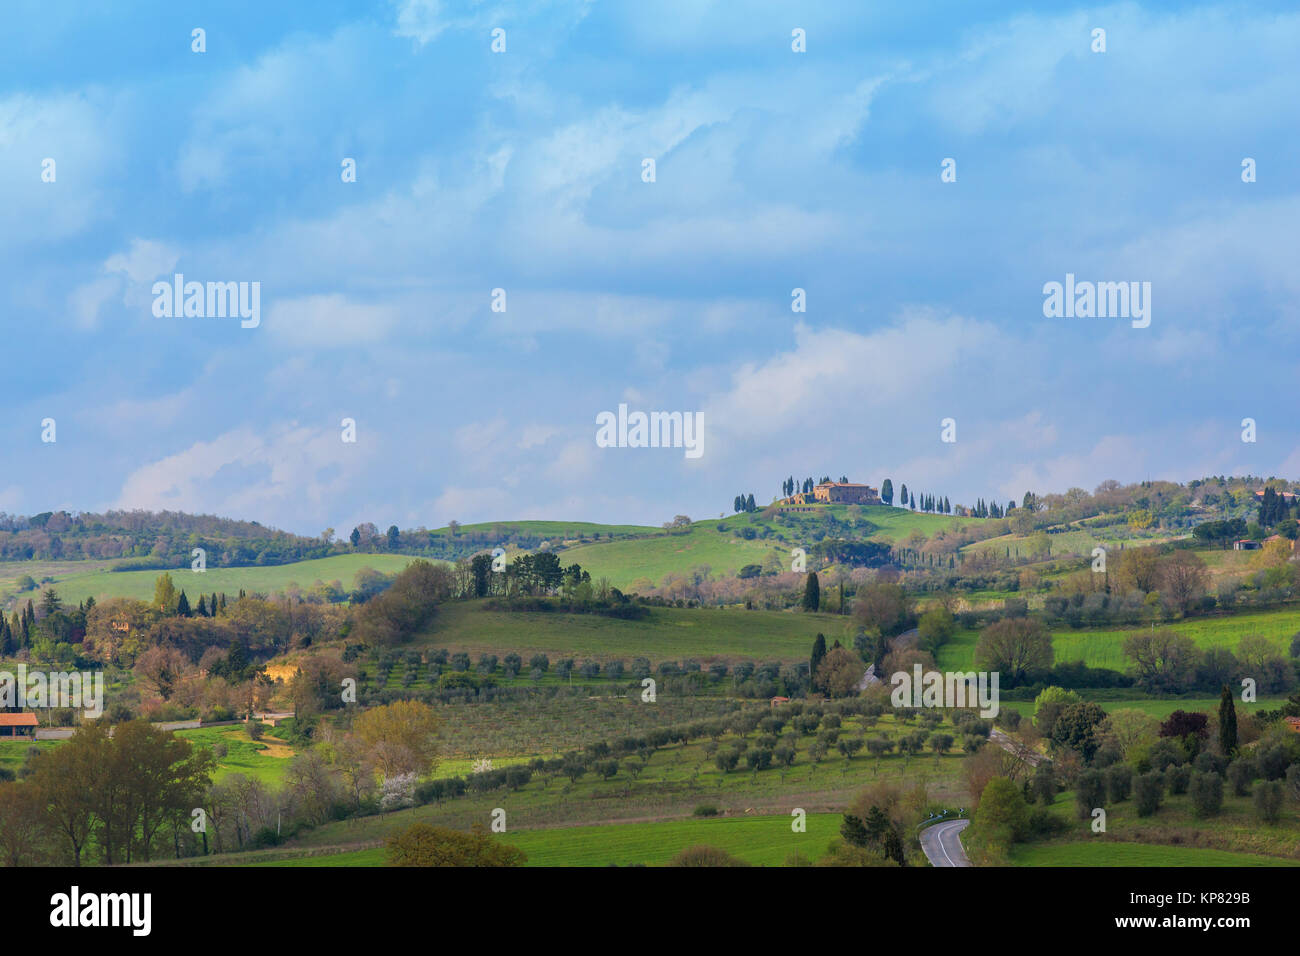 Typische Landschaft der Toskana mit Zypressen und Bauernhäusern Stock Photo